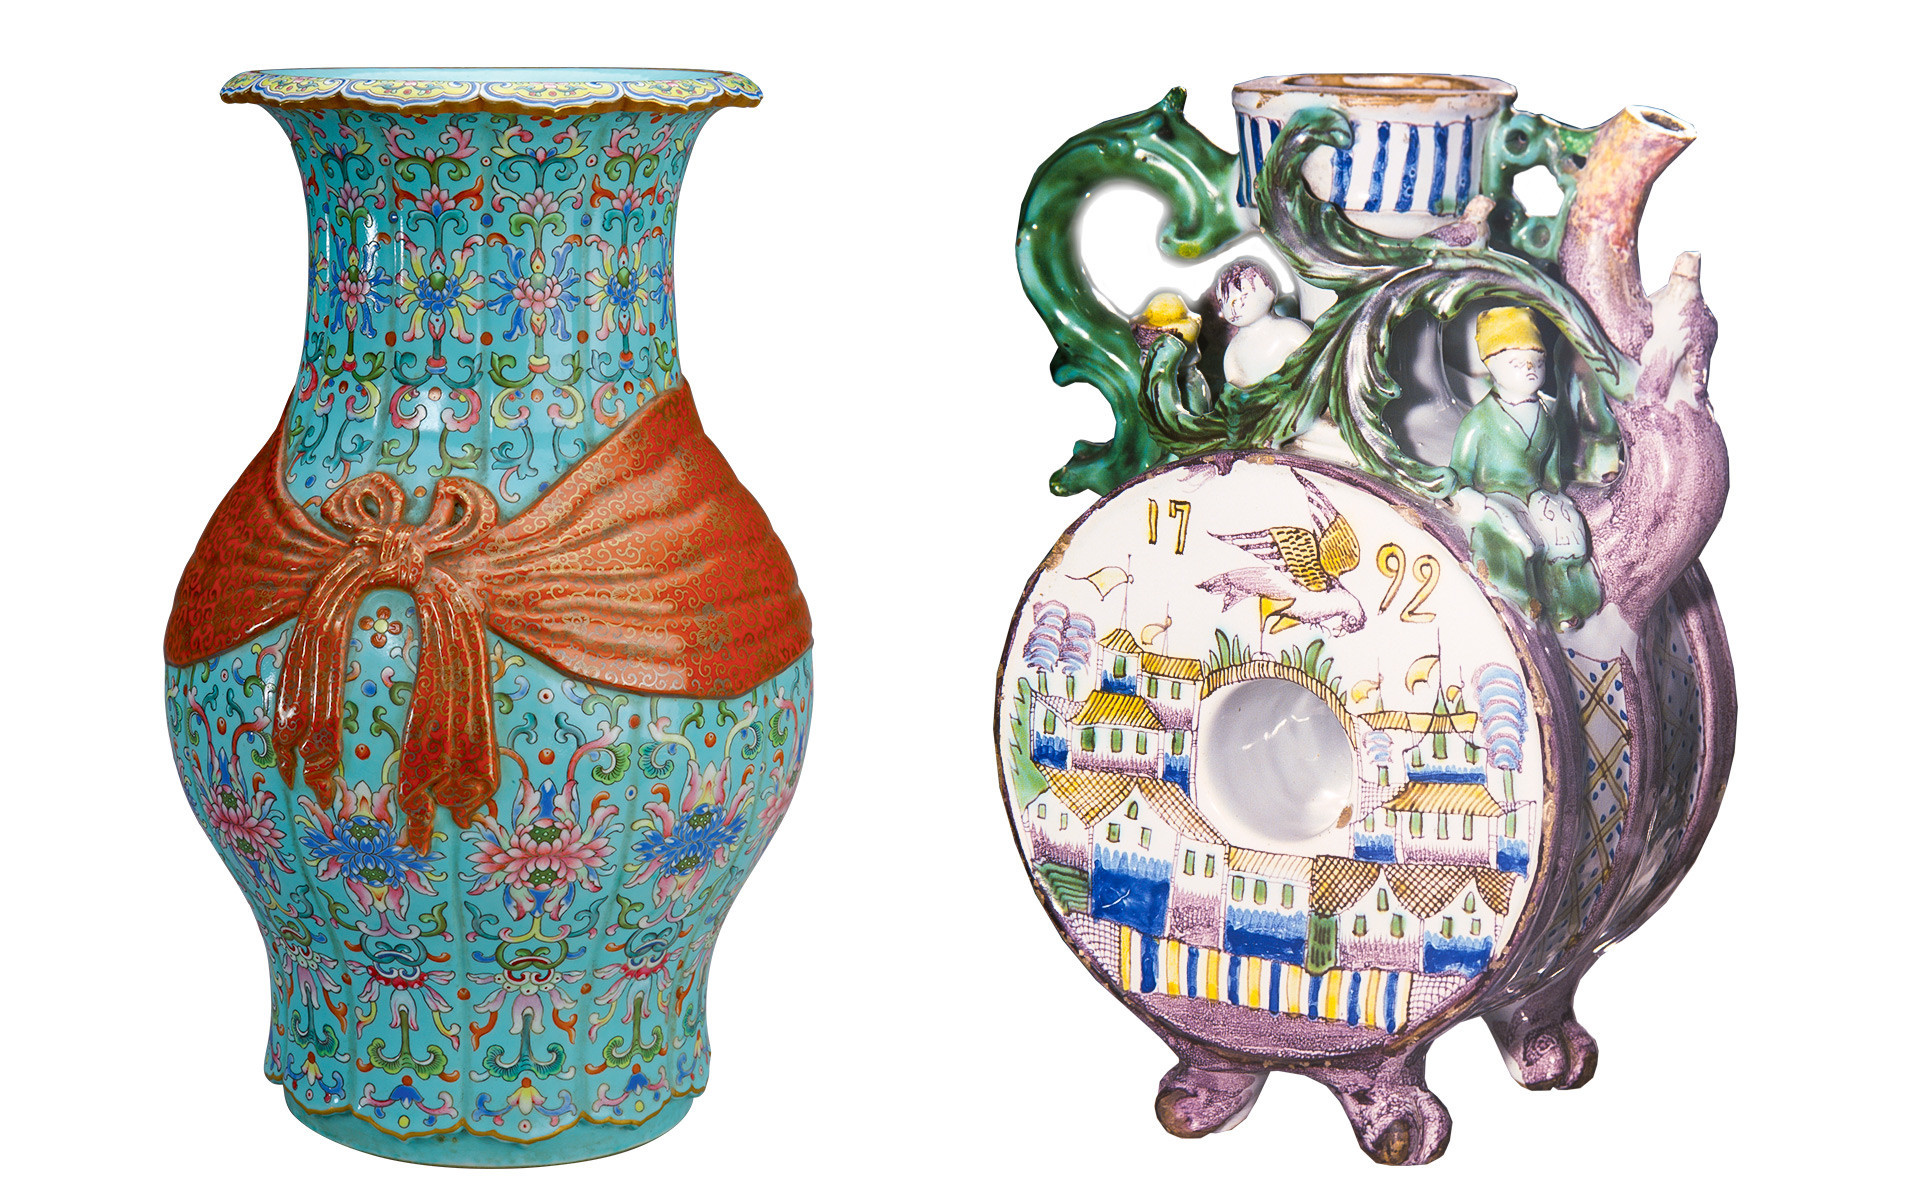 À esquerda, um vaso Baofu chinês da era Quing, do período Qianlong. À direita, um jarro russo Gjel, do século 18.